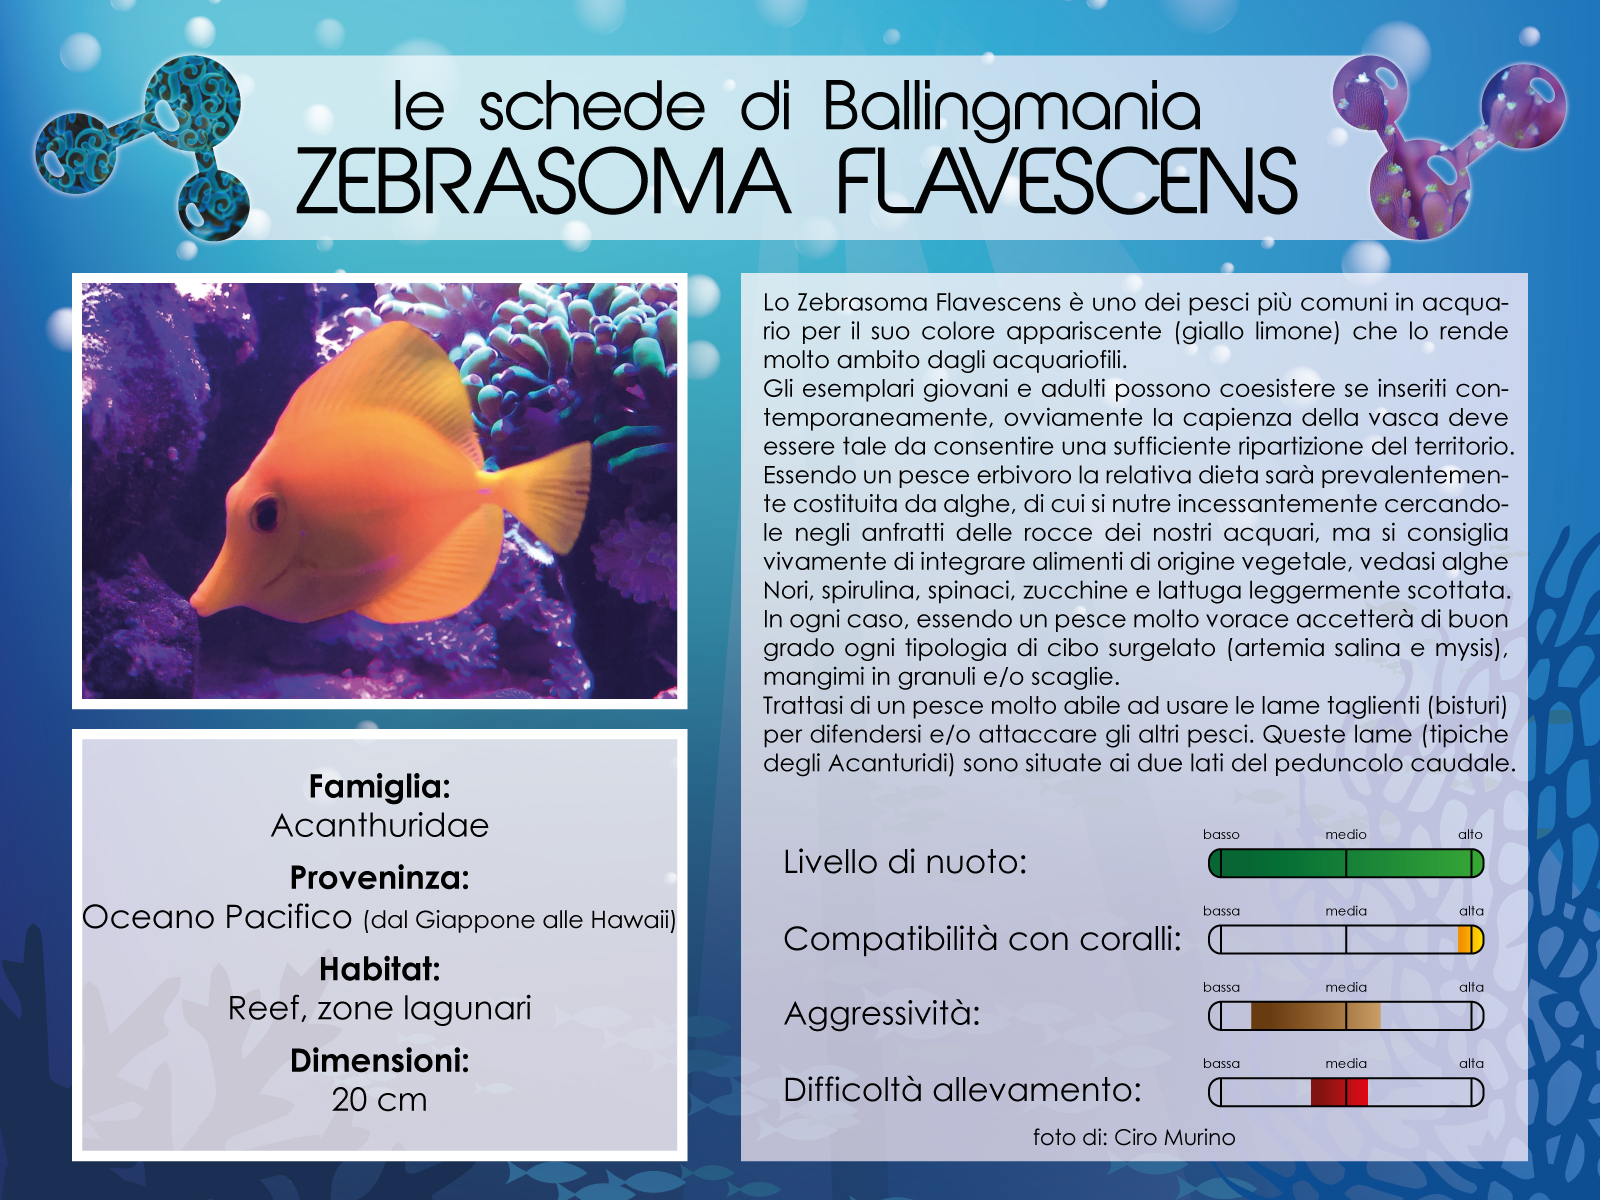 Zebrasoma Flavescens